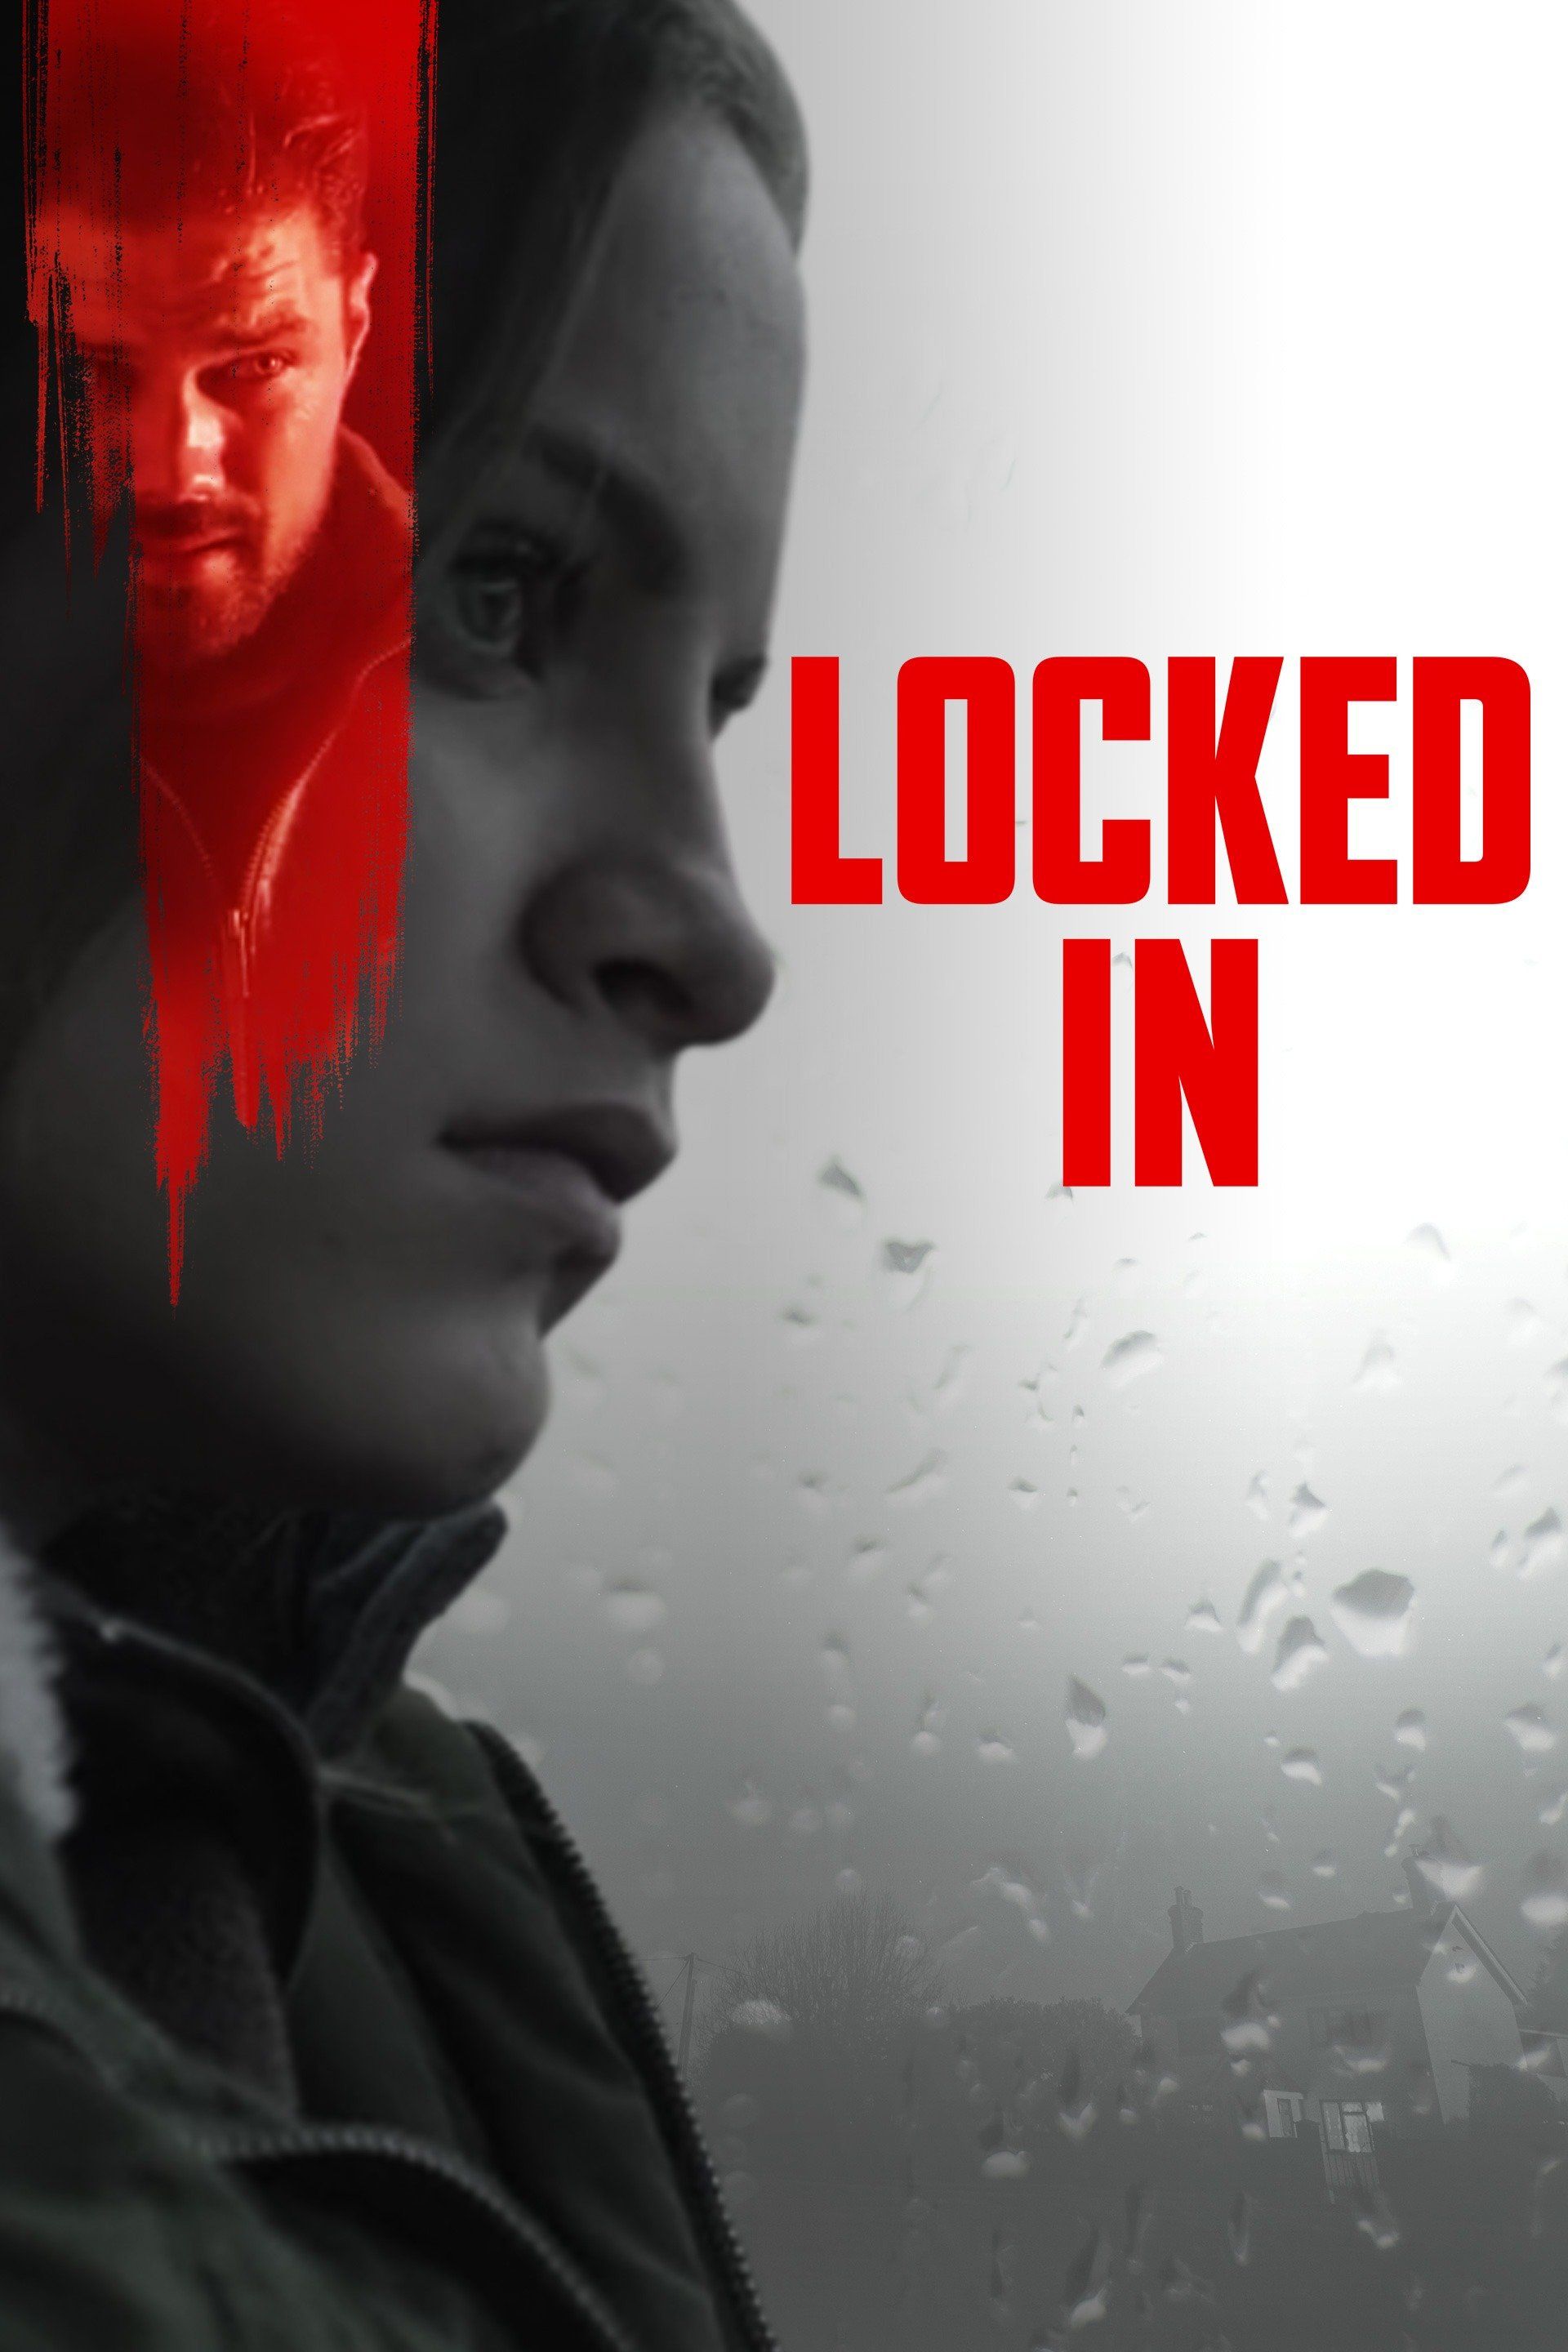 Watch Locked In (2019) Full Movie Free Online - Plex